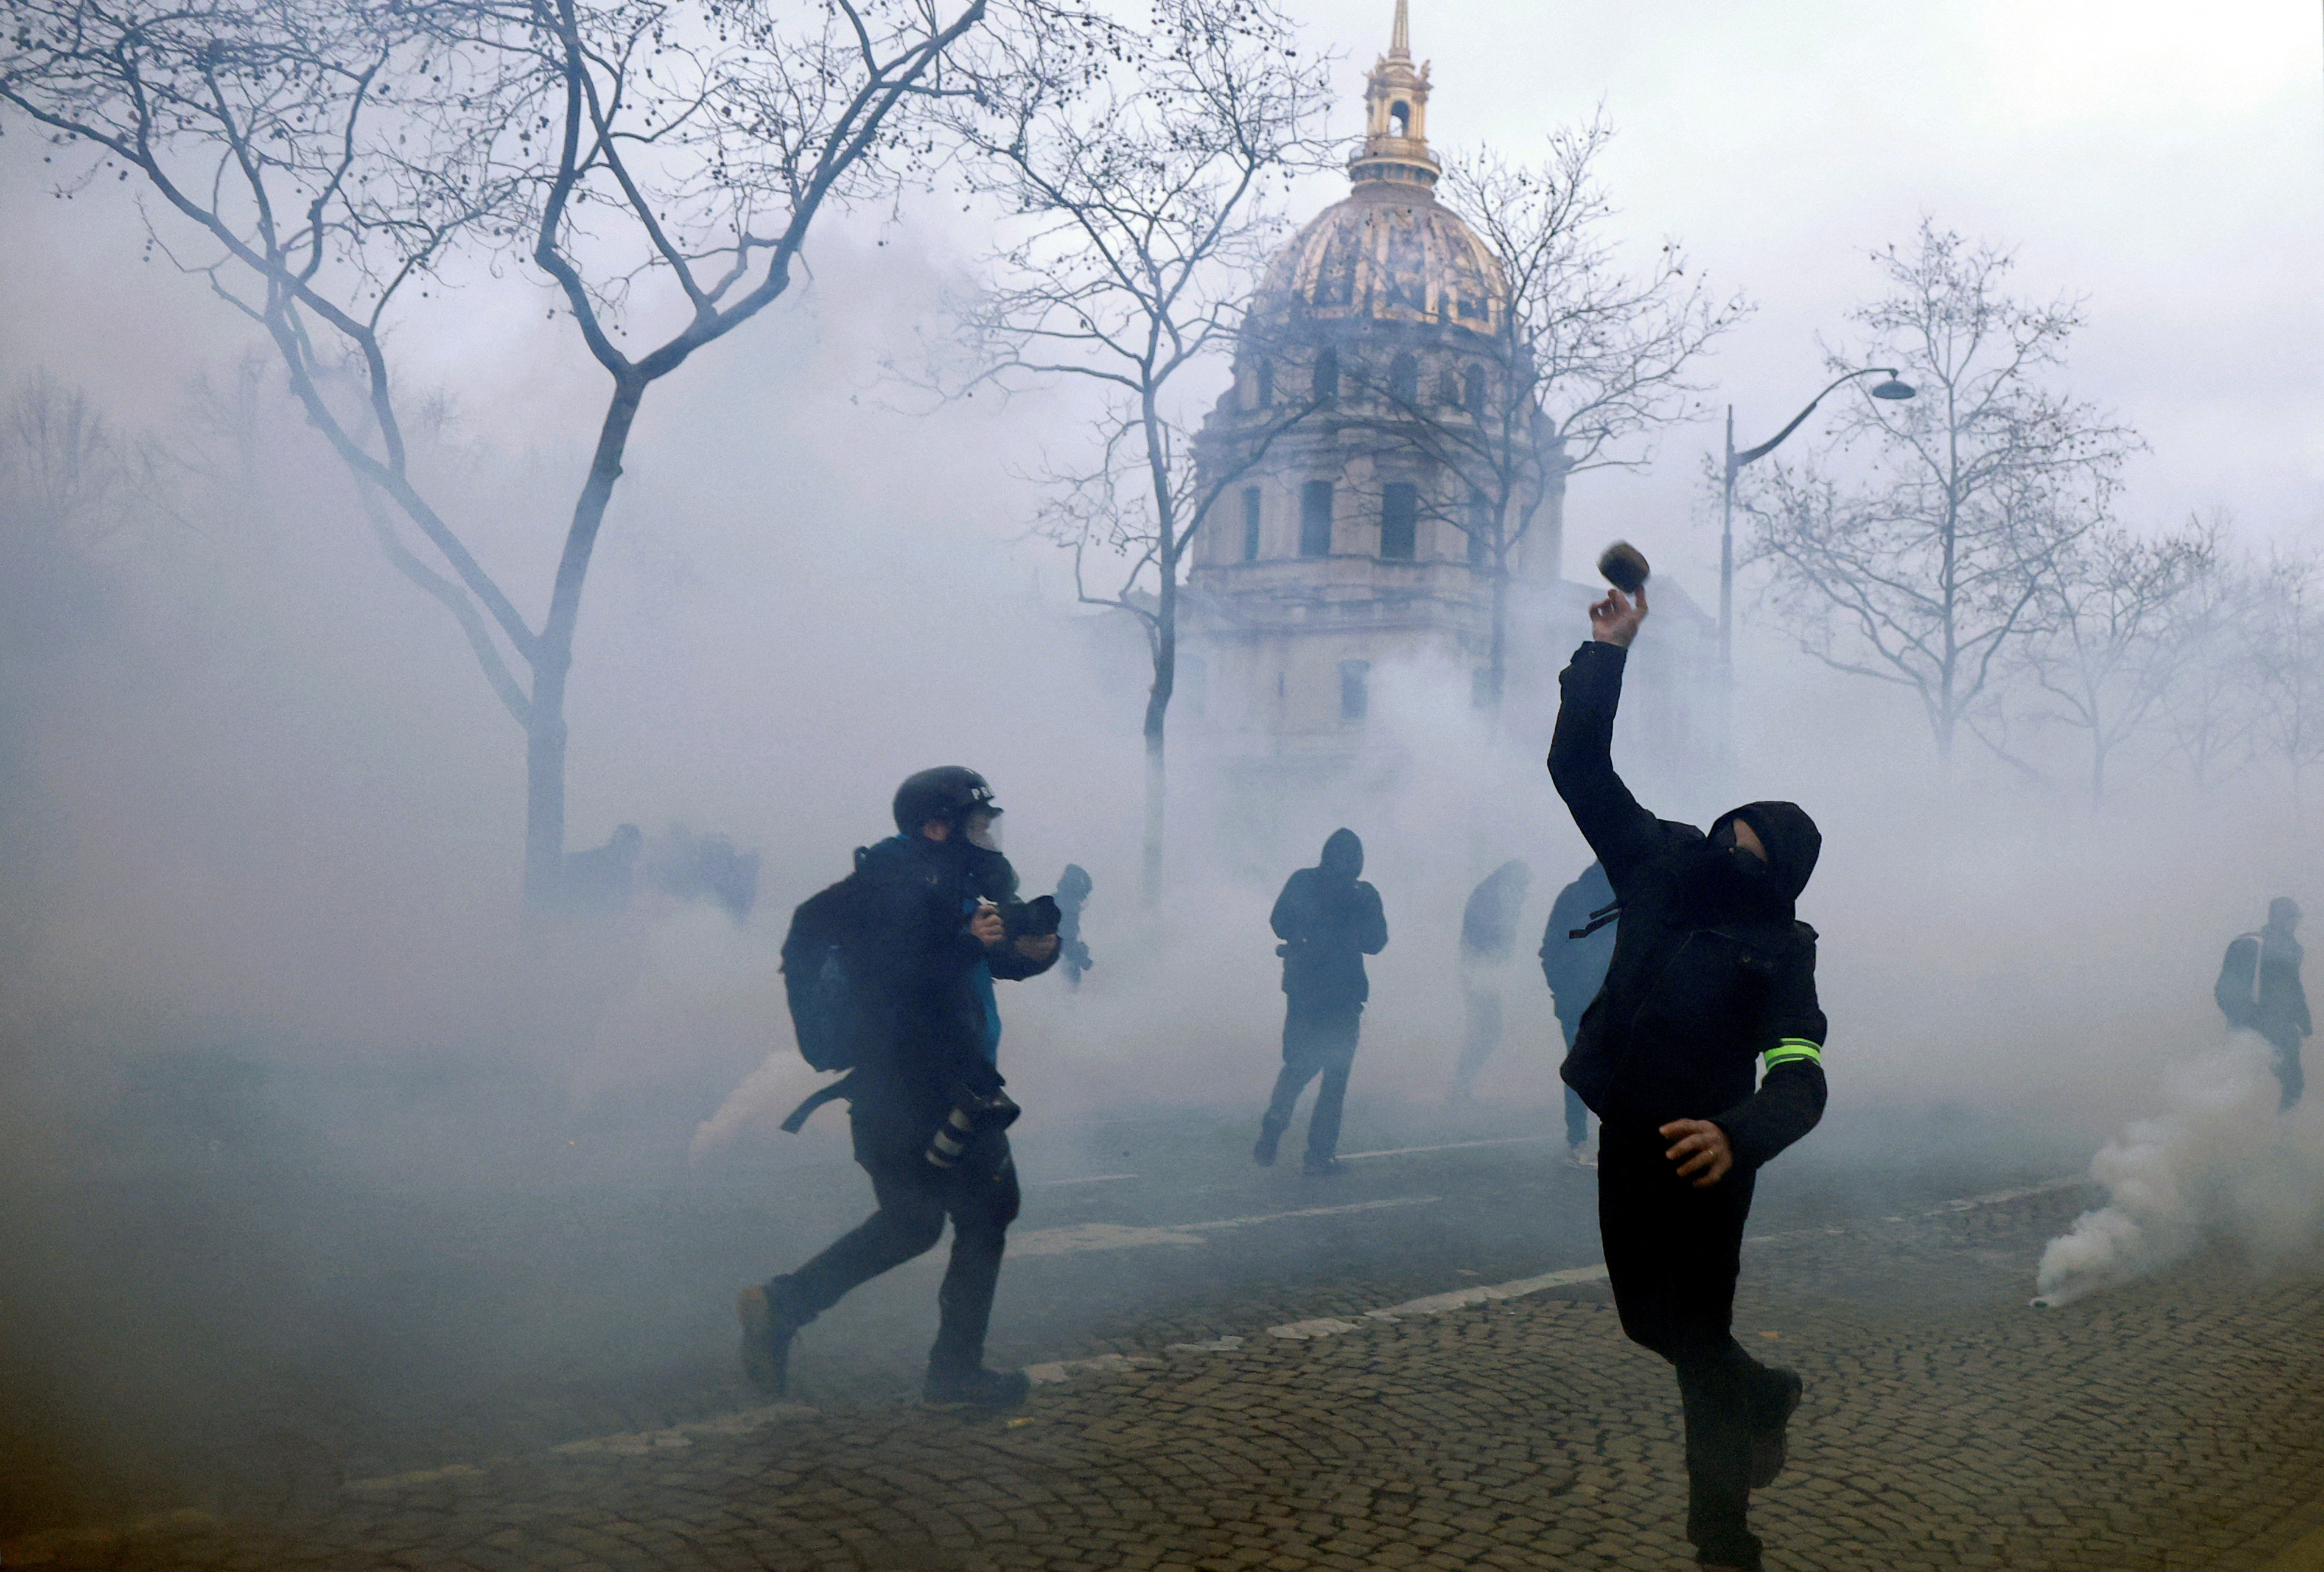 National strike in France against pension reform